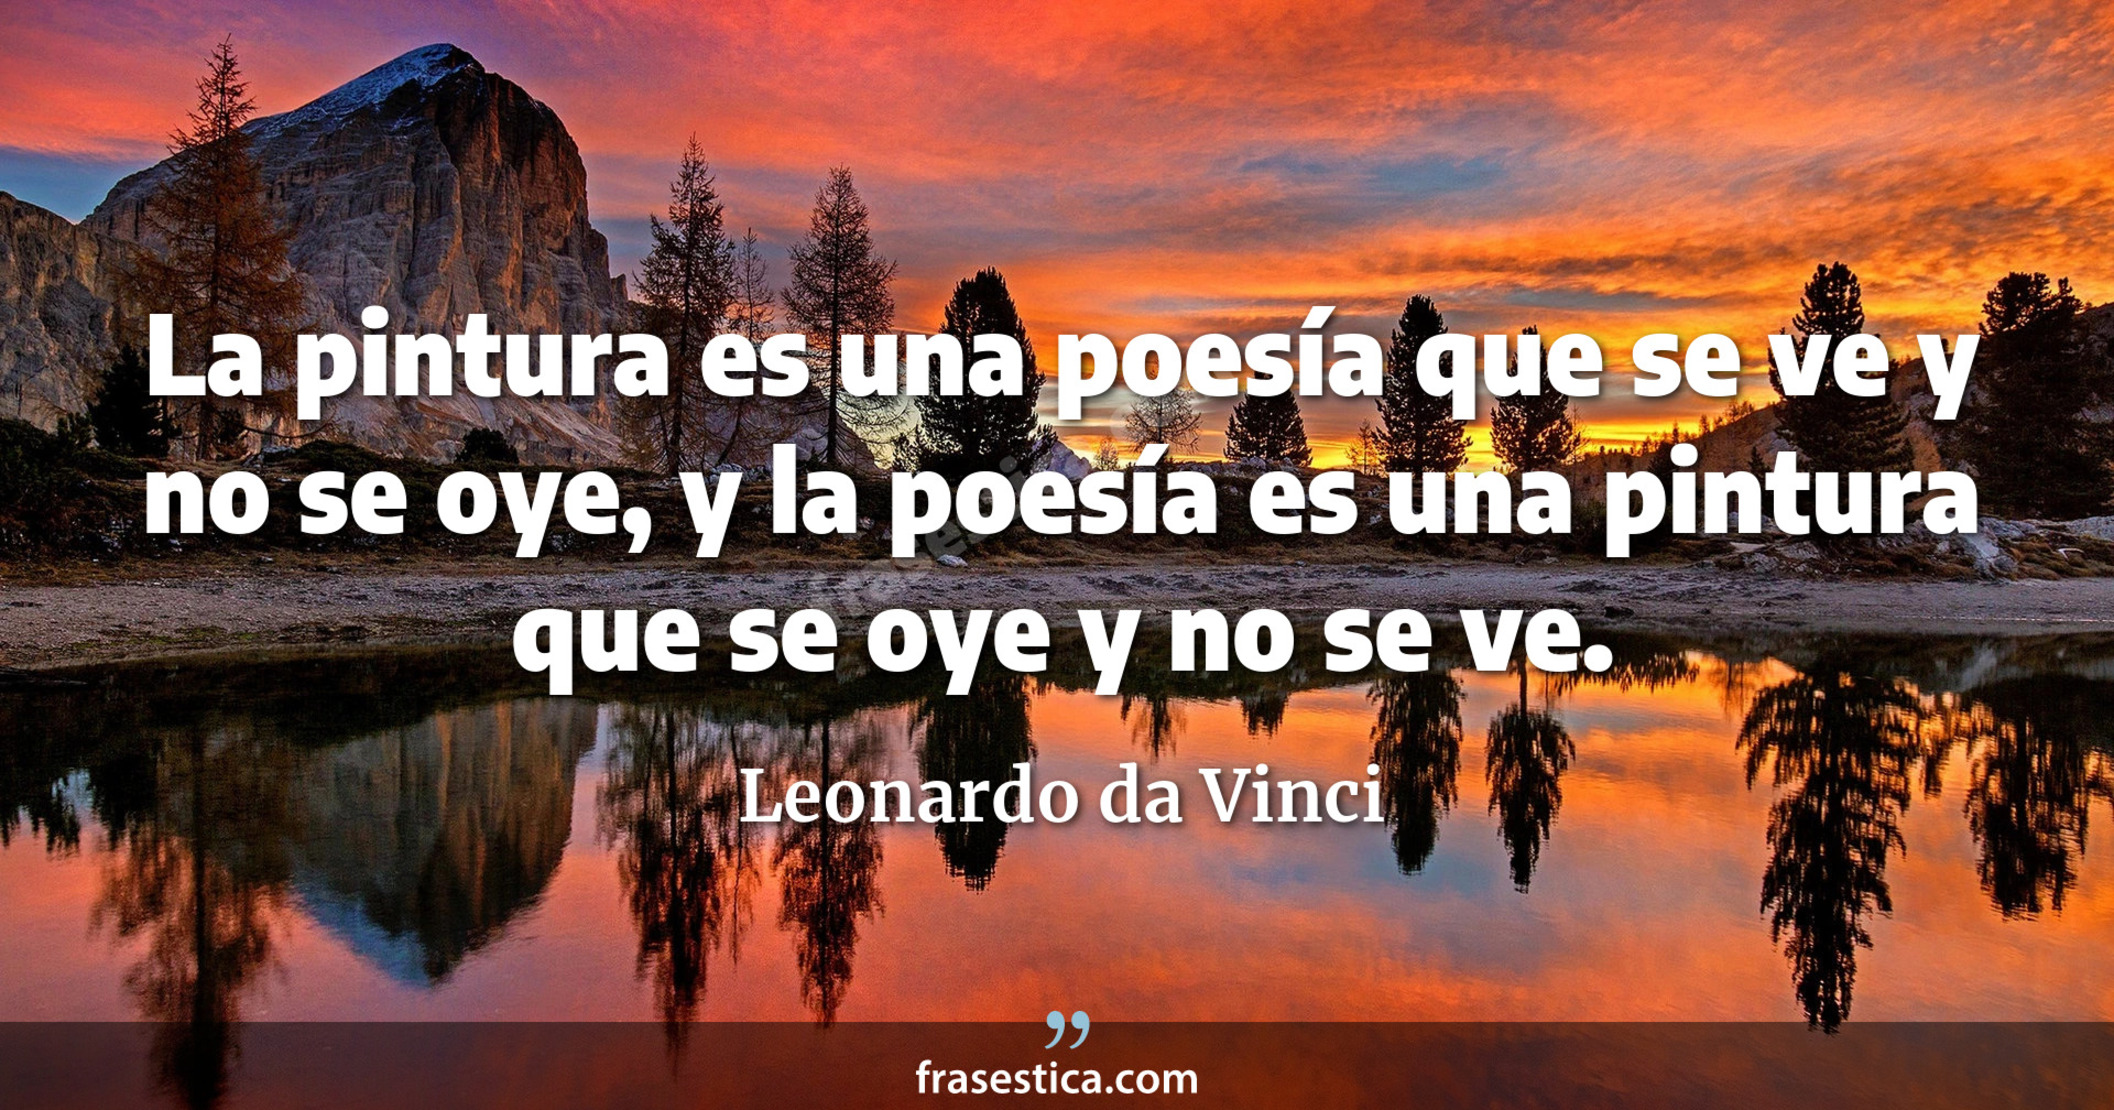 La pintura es una poesía que se ve y no se oye, y la poesía es una pintura que se oye y no se ve. - Leonardo da Vinci